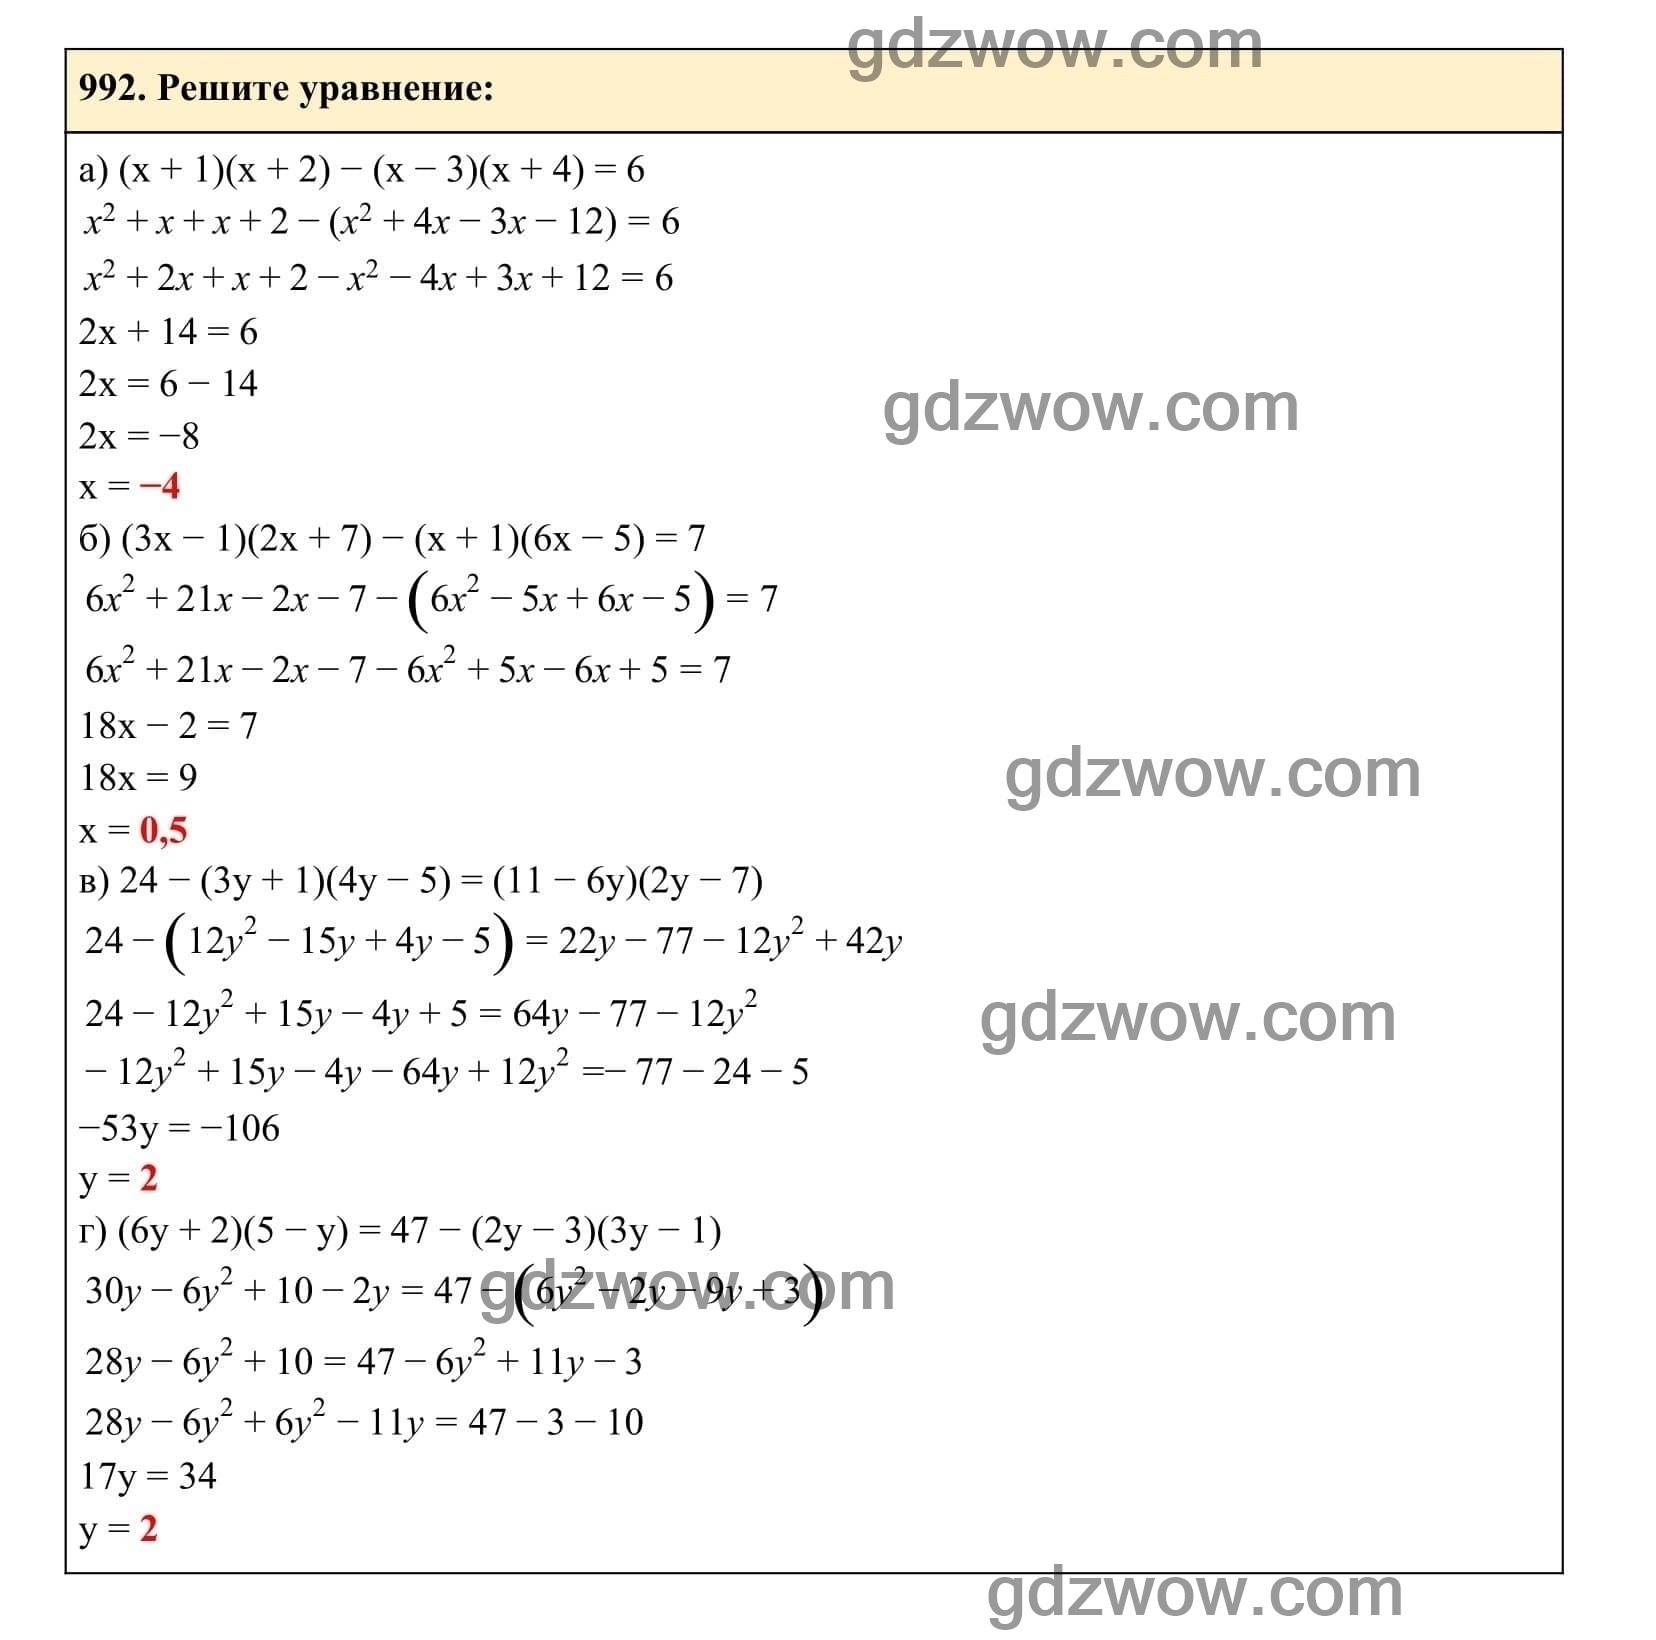 Упражнение 992 - ГДЗ по Алгебре 7 класс Учебник Макарычев (решебник) - GDZwow